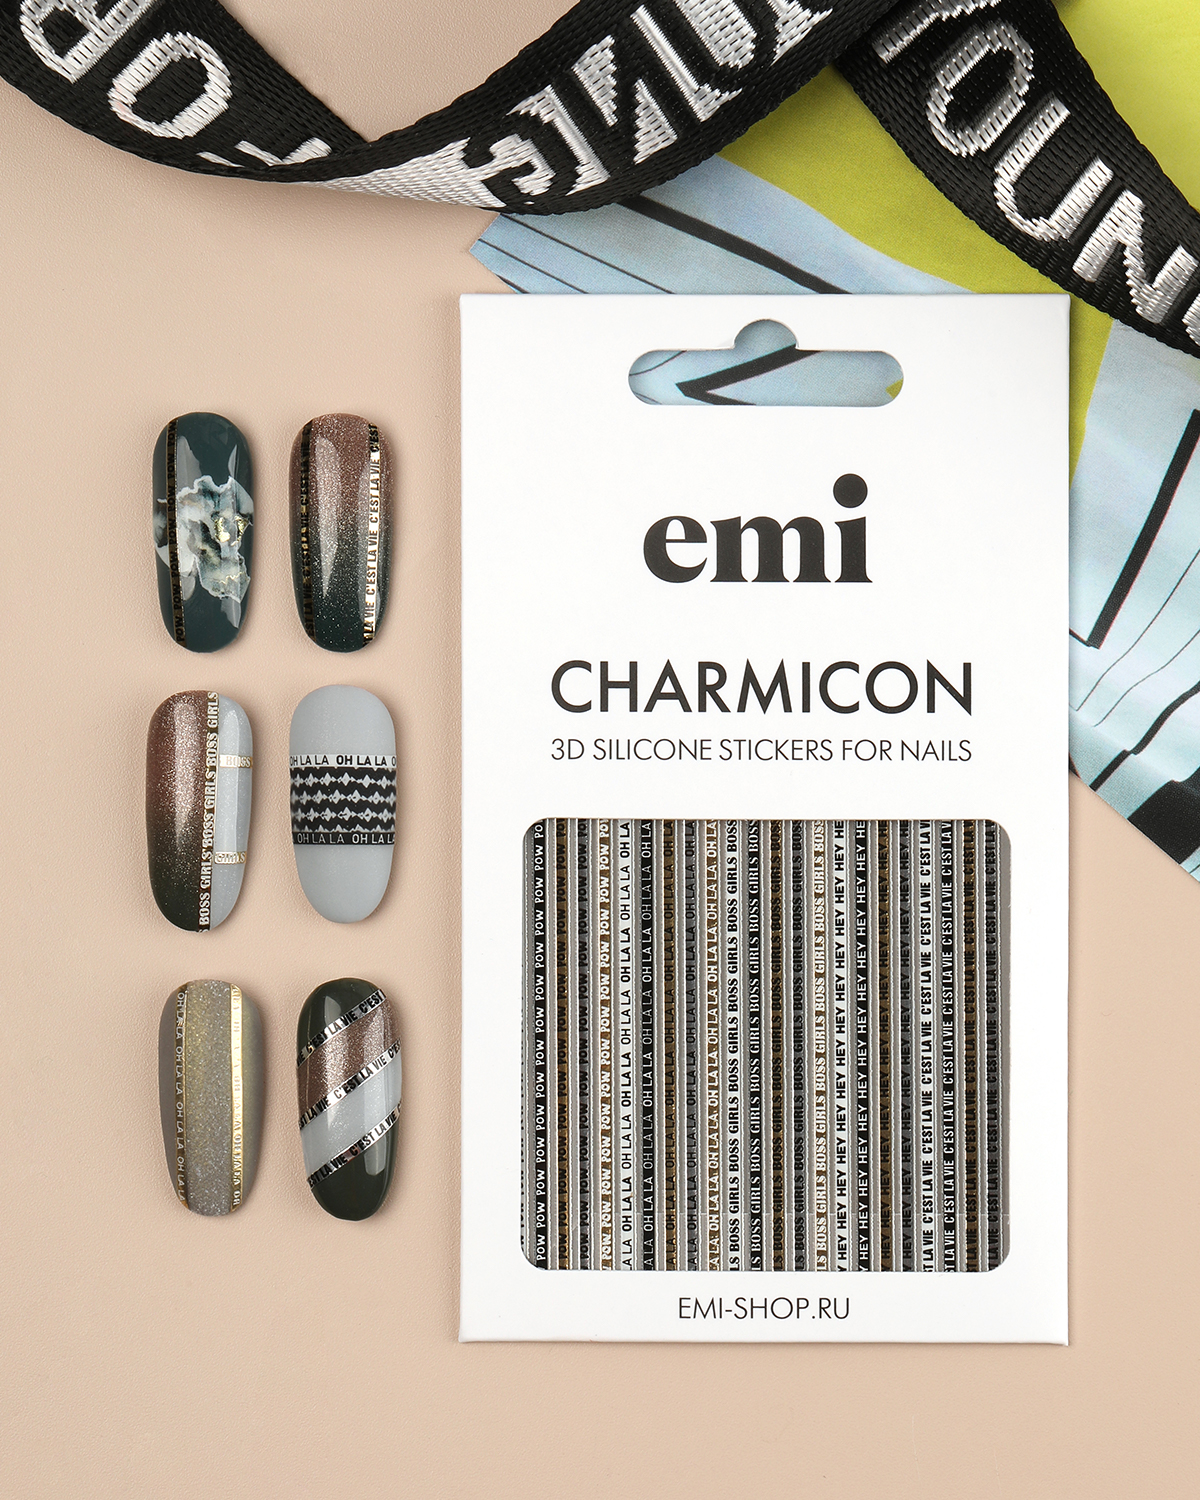 Объемные наклейки для дизайна ногтей EMi Charmicon 3D Silicone Stickers №244 Oh la la наклейки объемные единороги 3